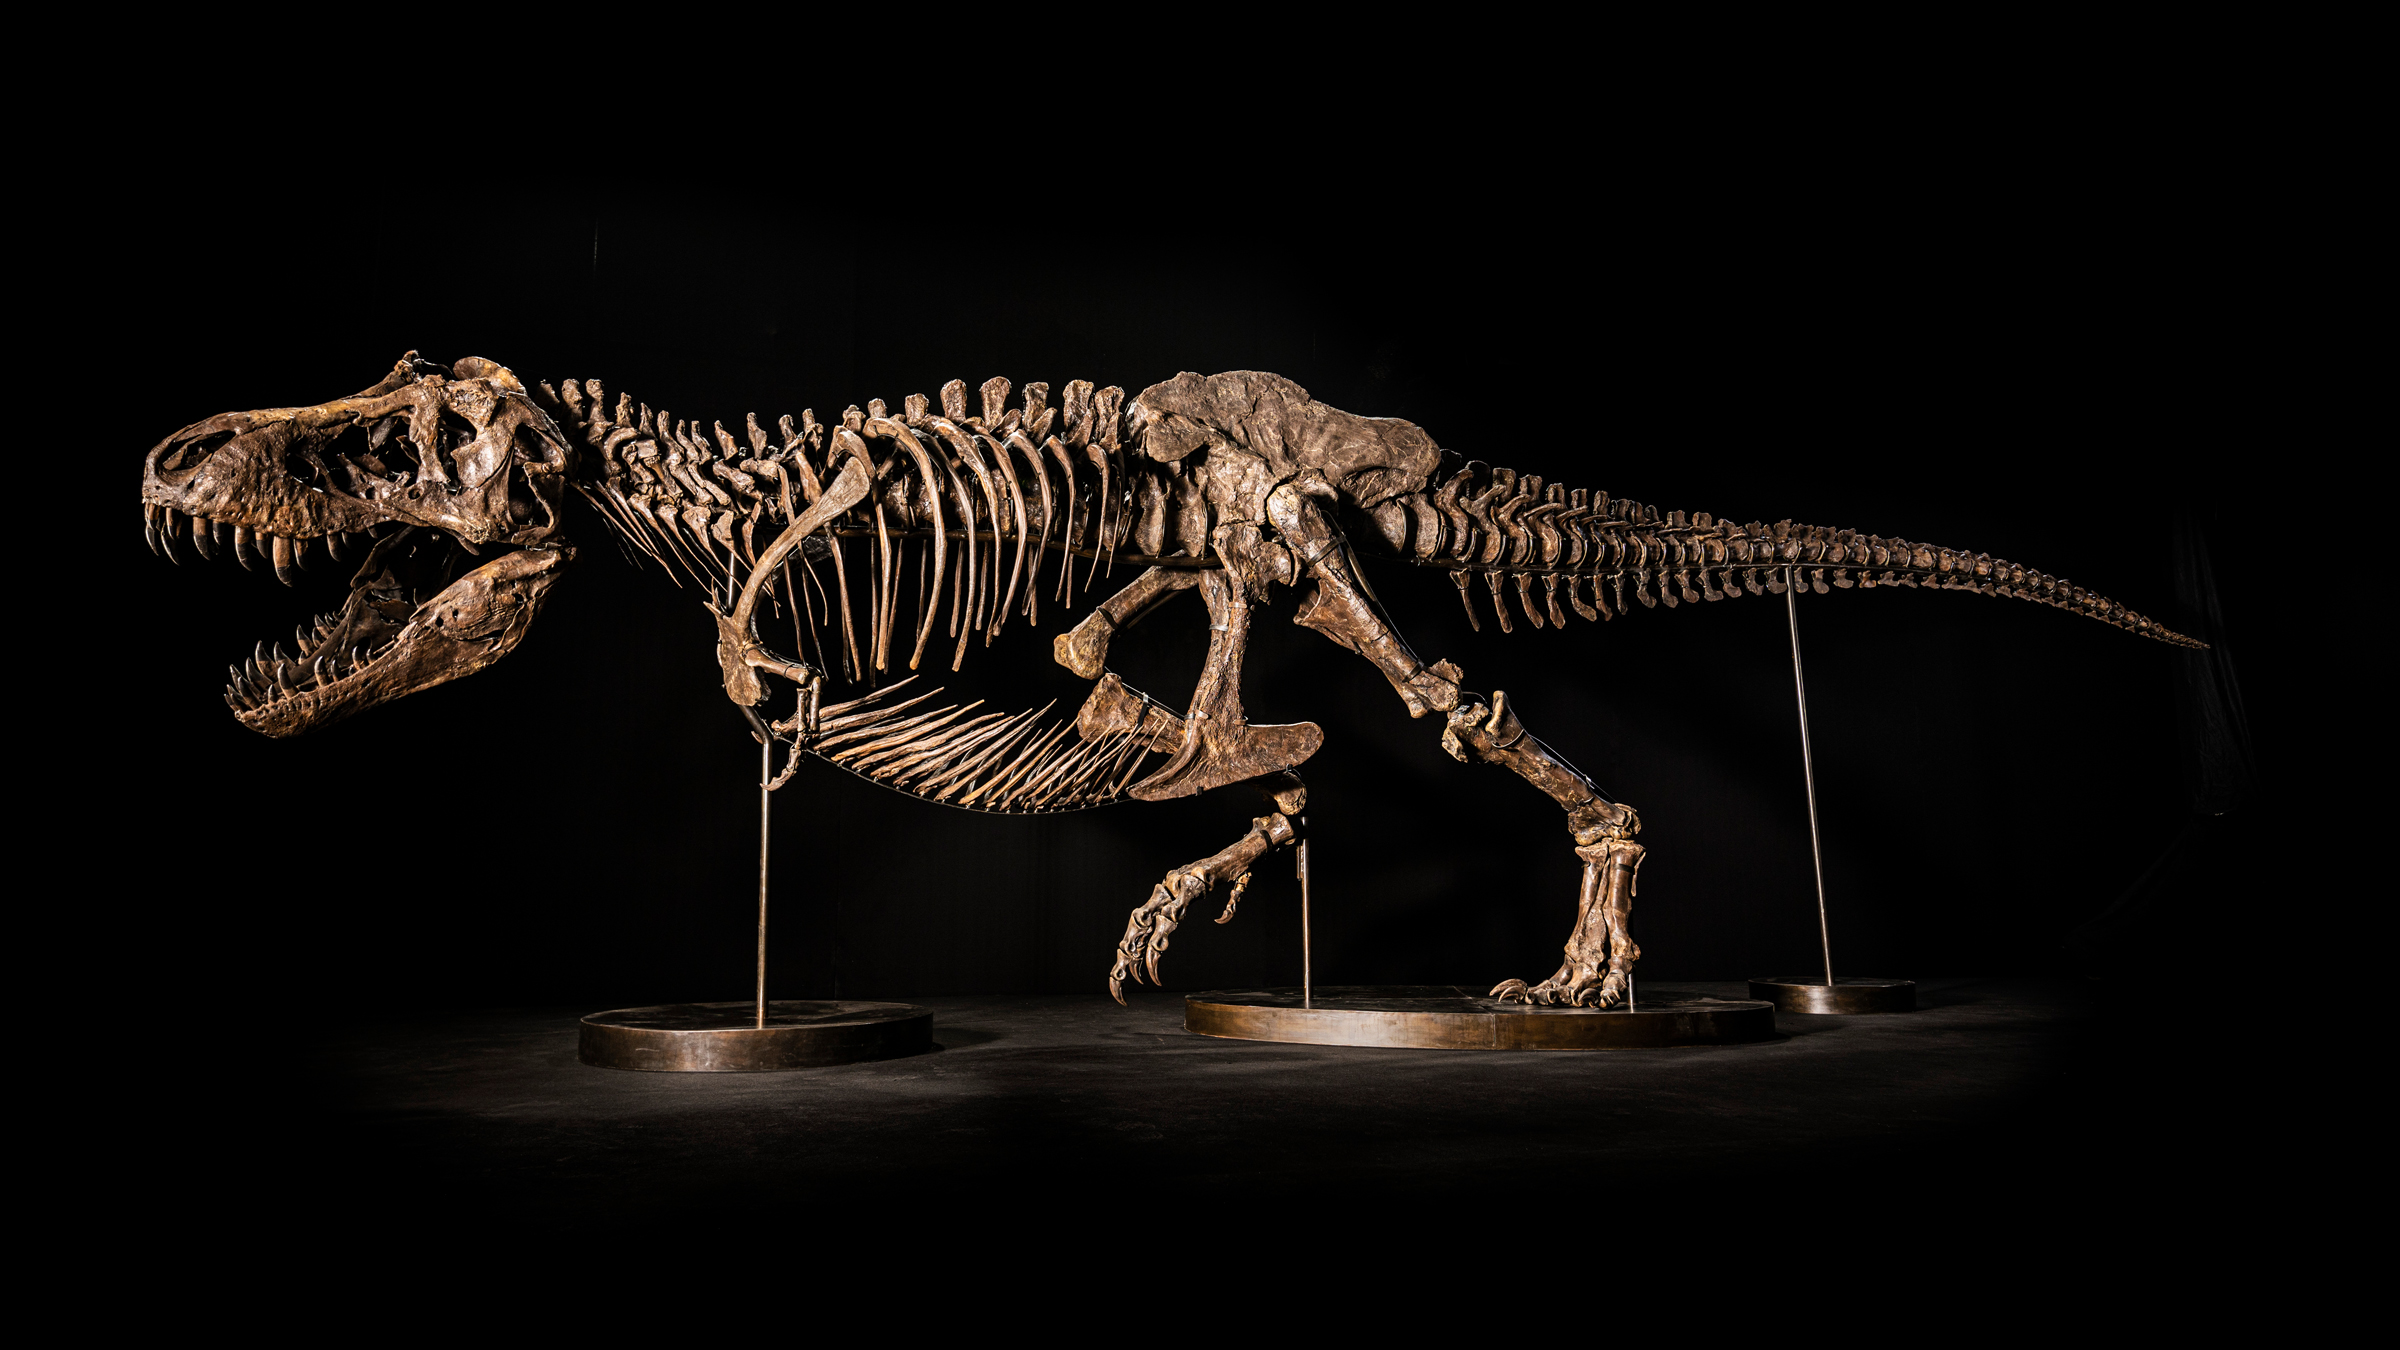 $25 million auction of T. rex